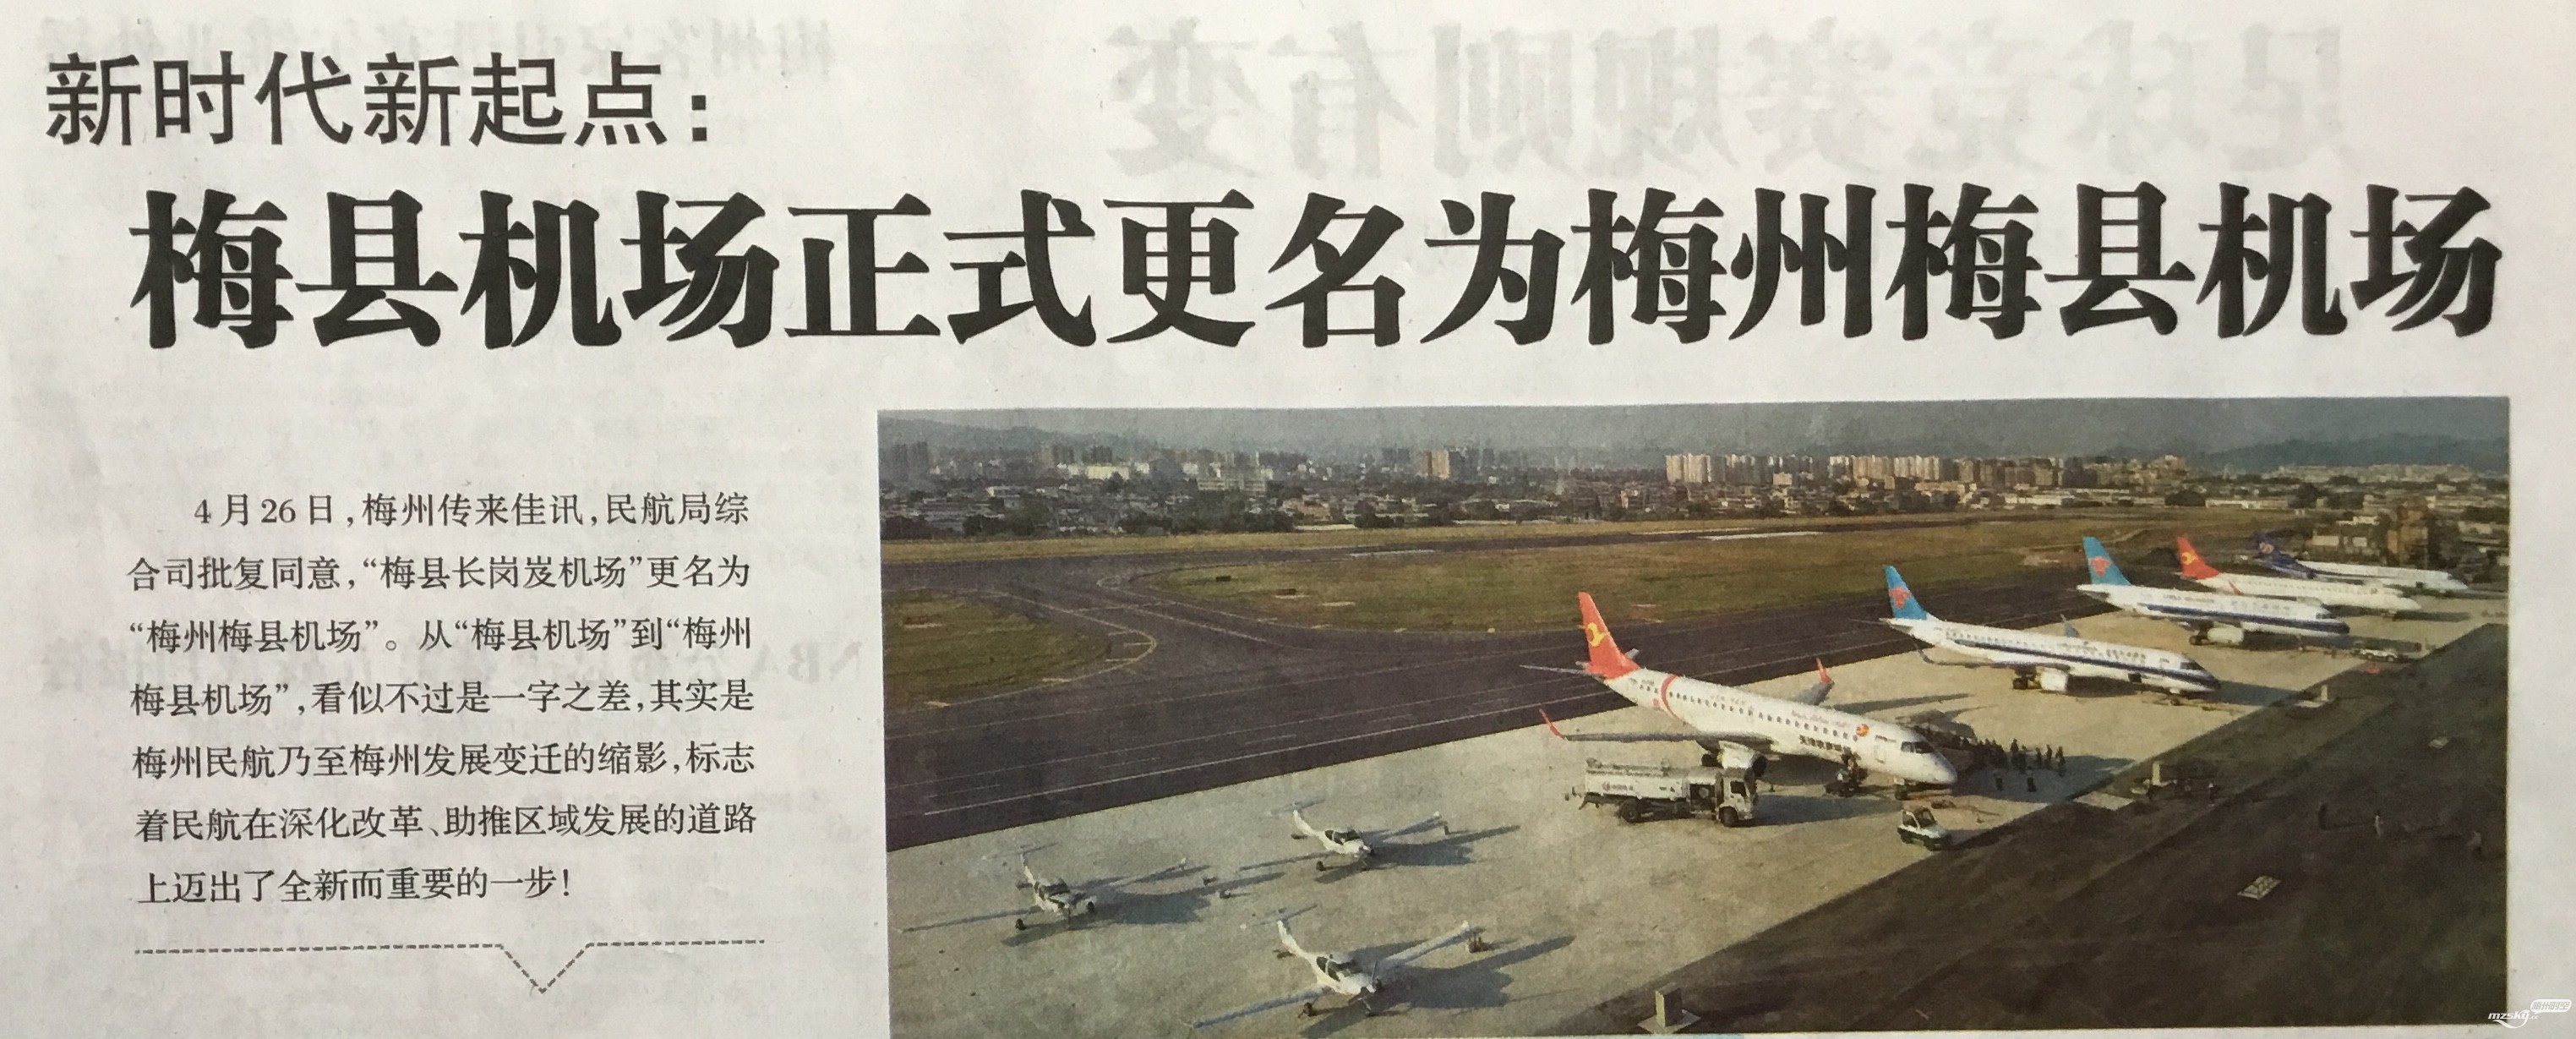 梅县机场正式更名为梅州梅县机场